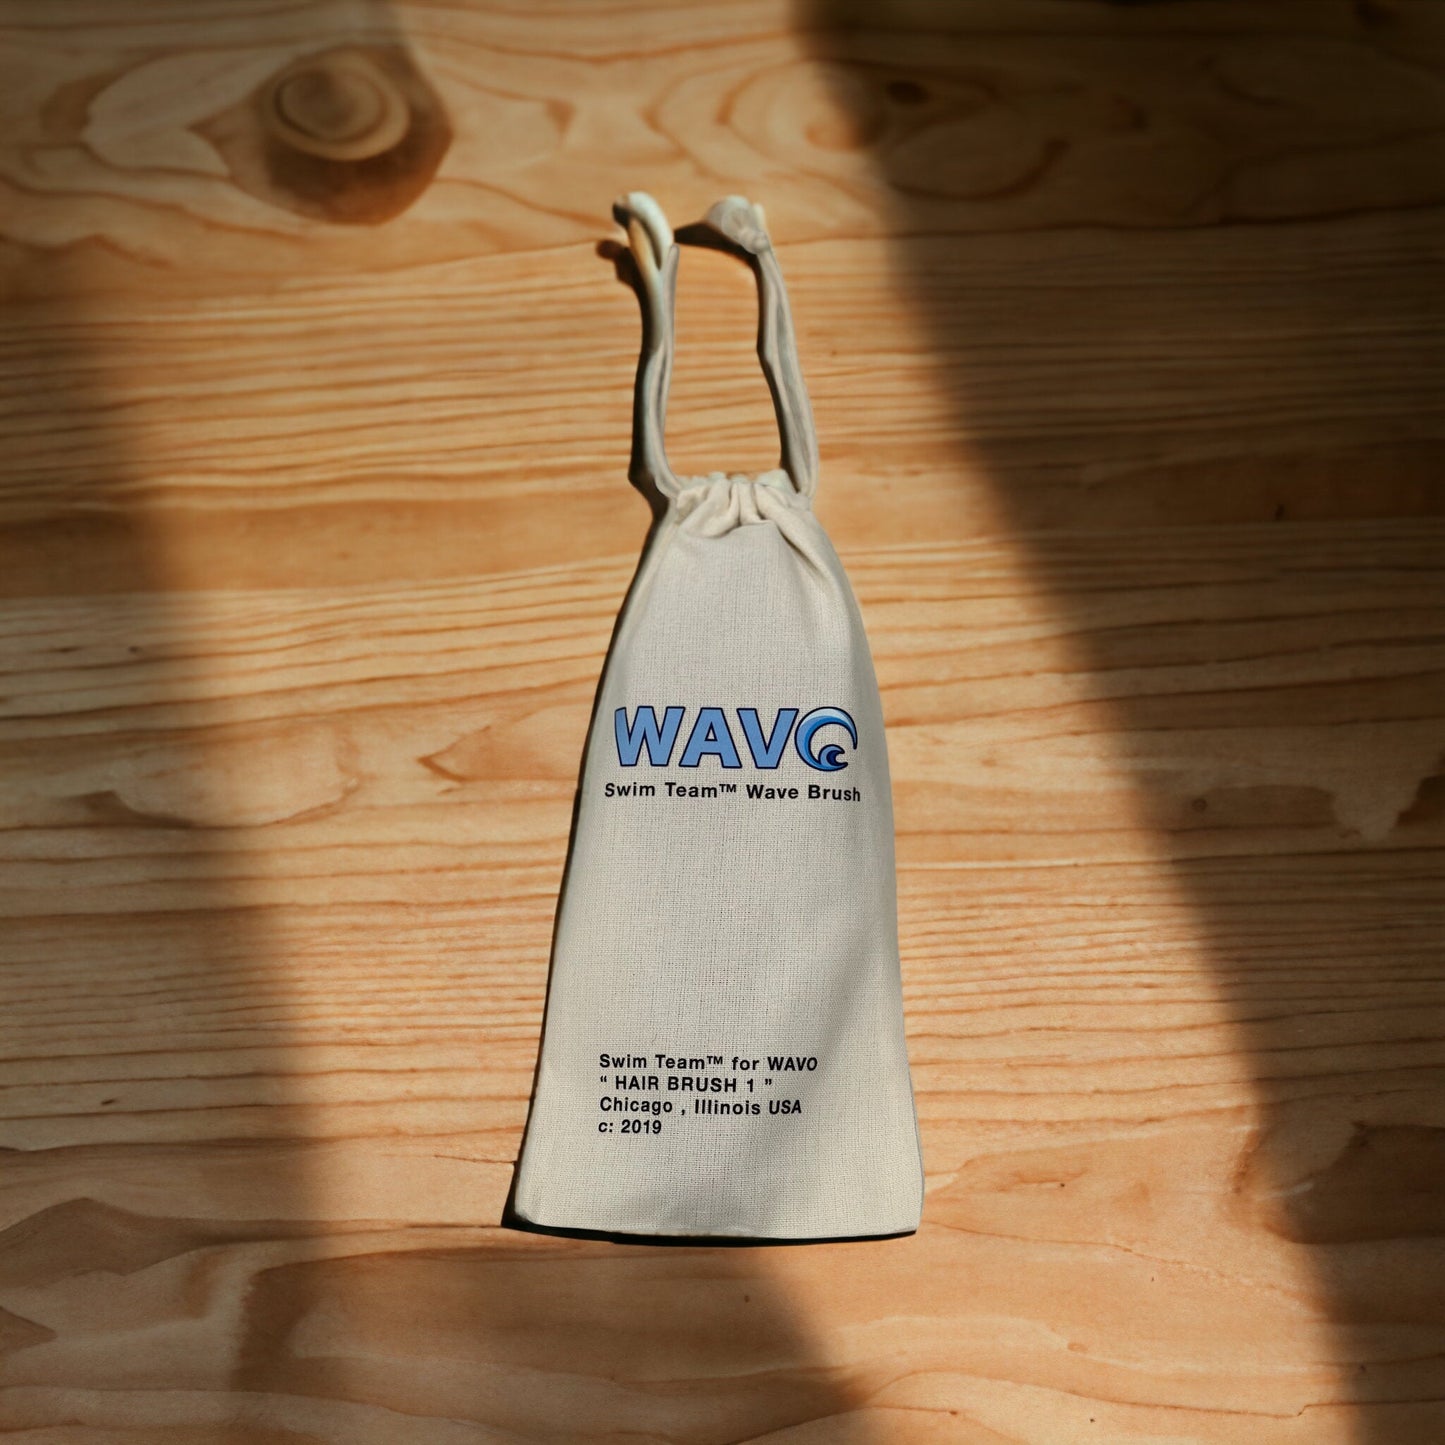 " Hair Brush 1 " Swim Team™ for WAVO - Made With Hard Nylon - All Purpose Wave Brush